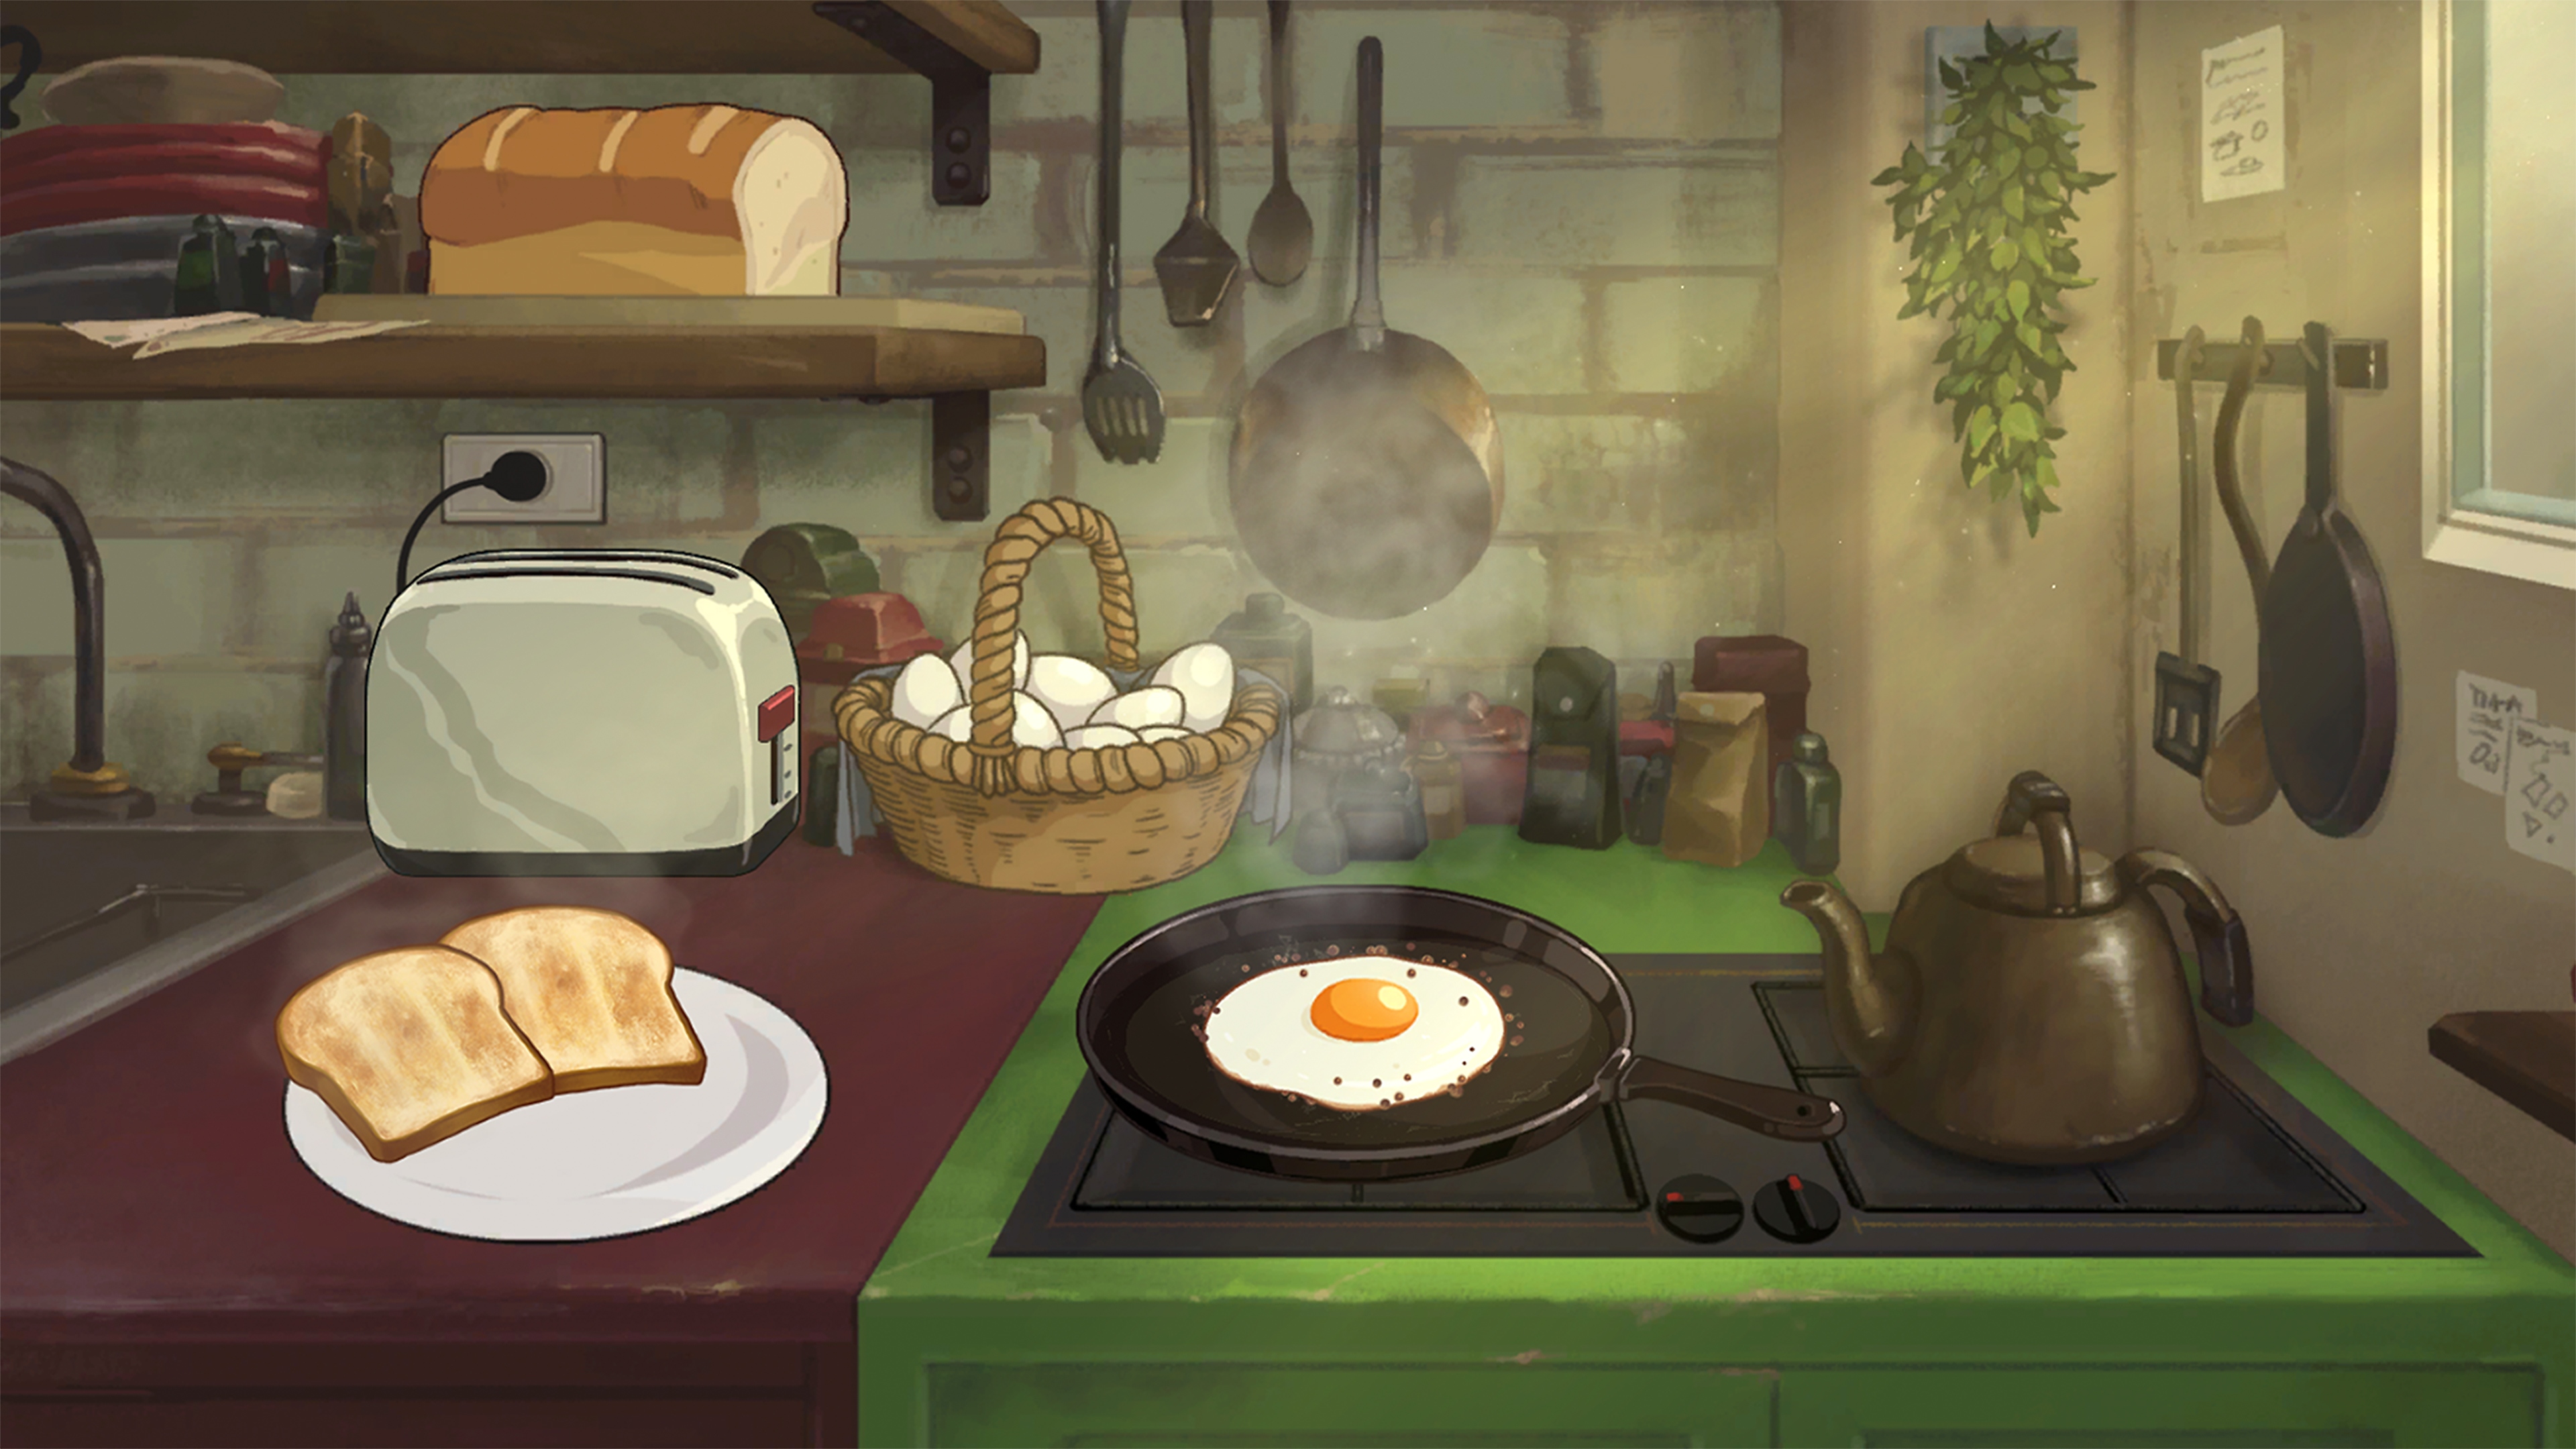 Behind the Frame: Il paesaggio più bello - Istantanea della schermata della colazione preparata sui fornelli